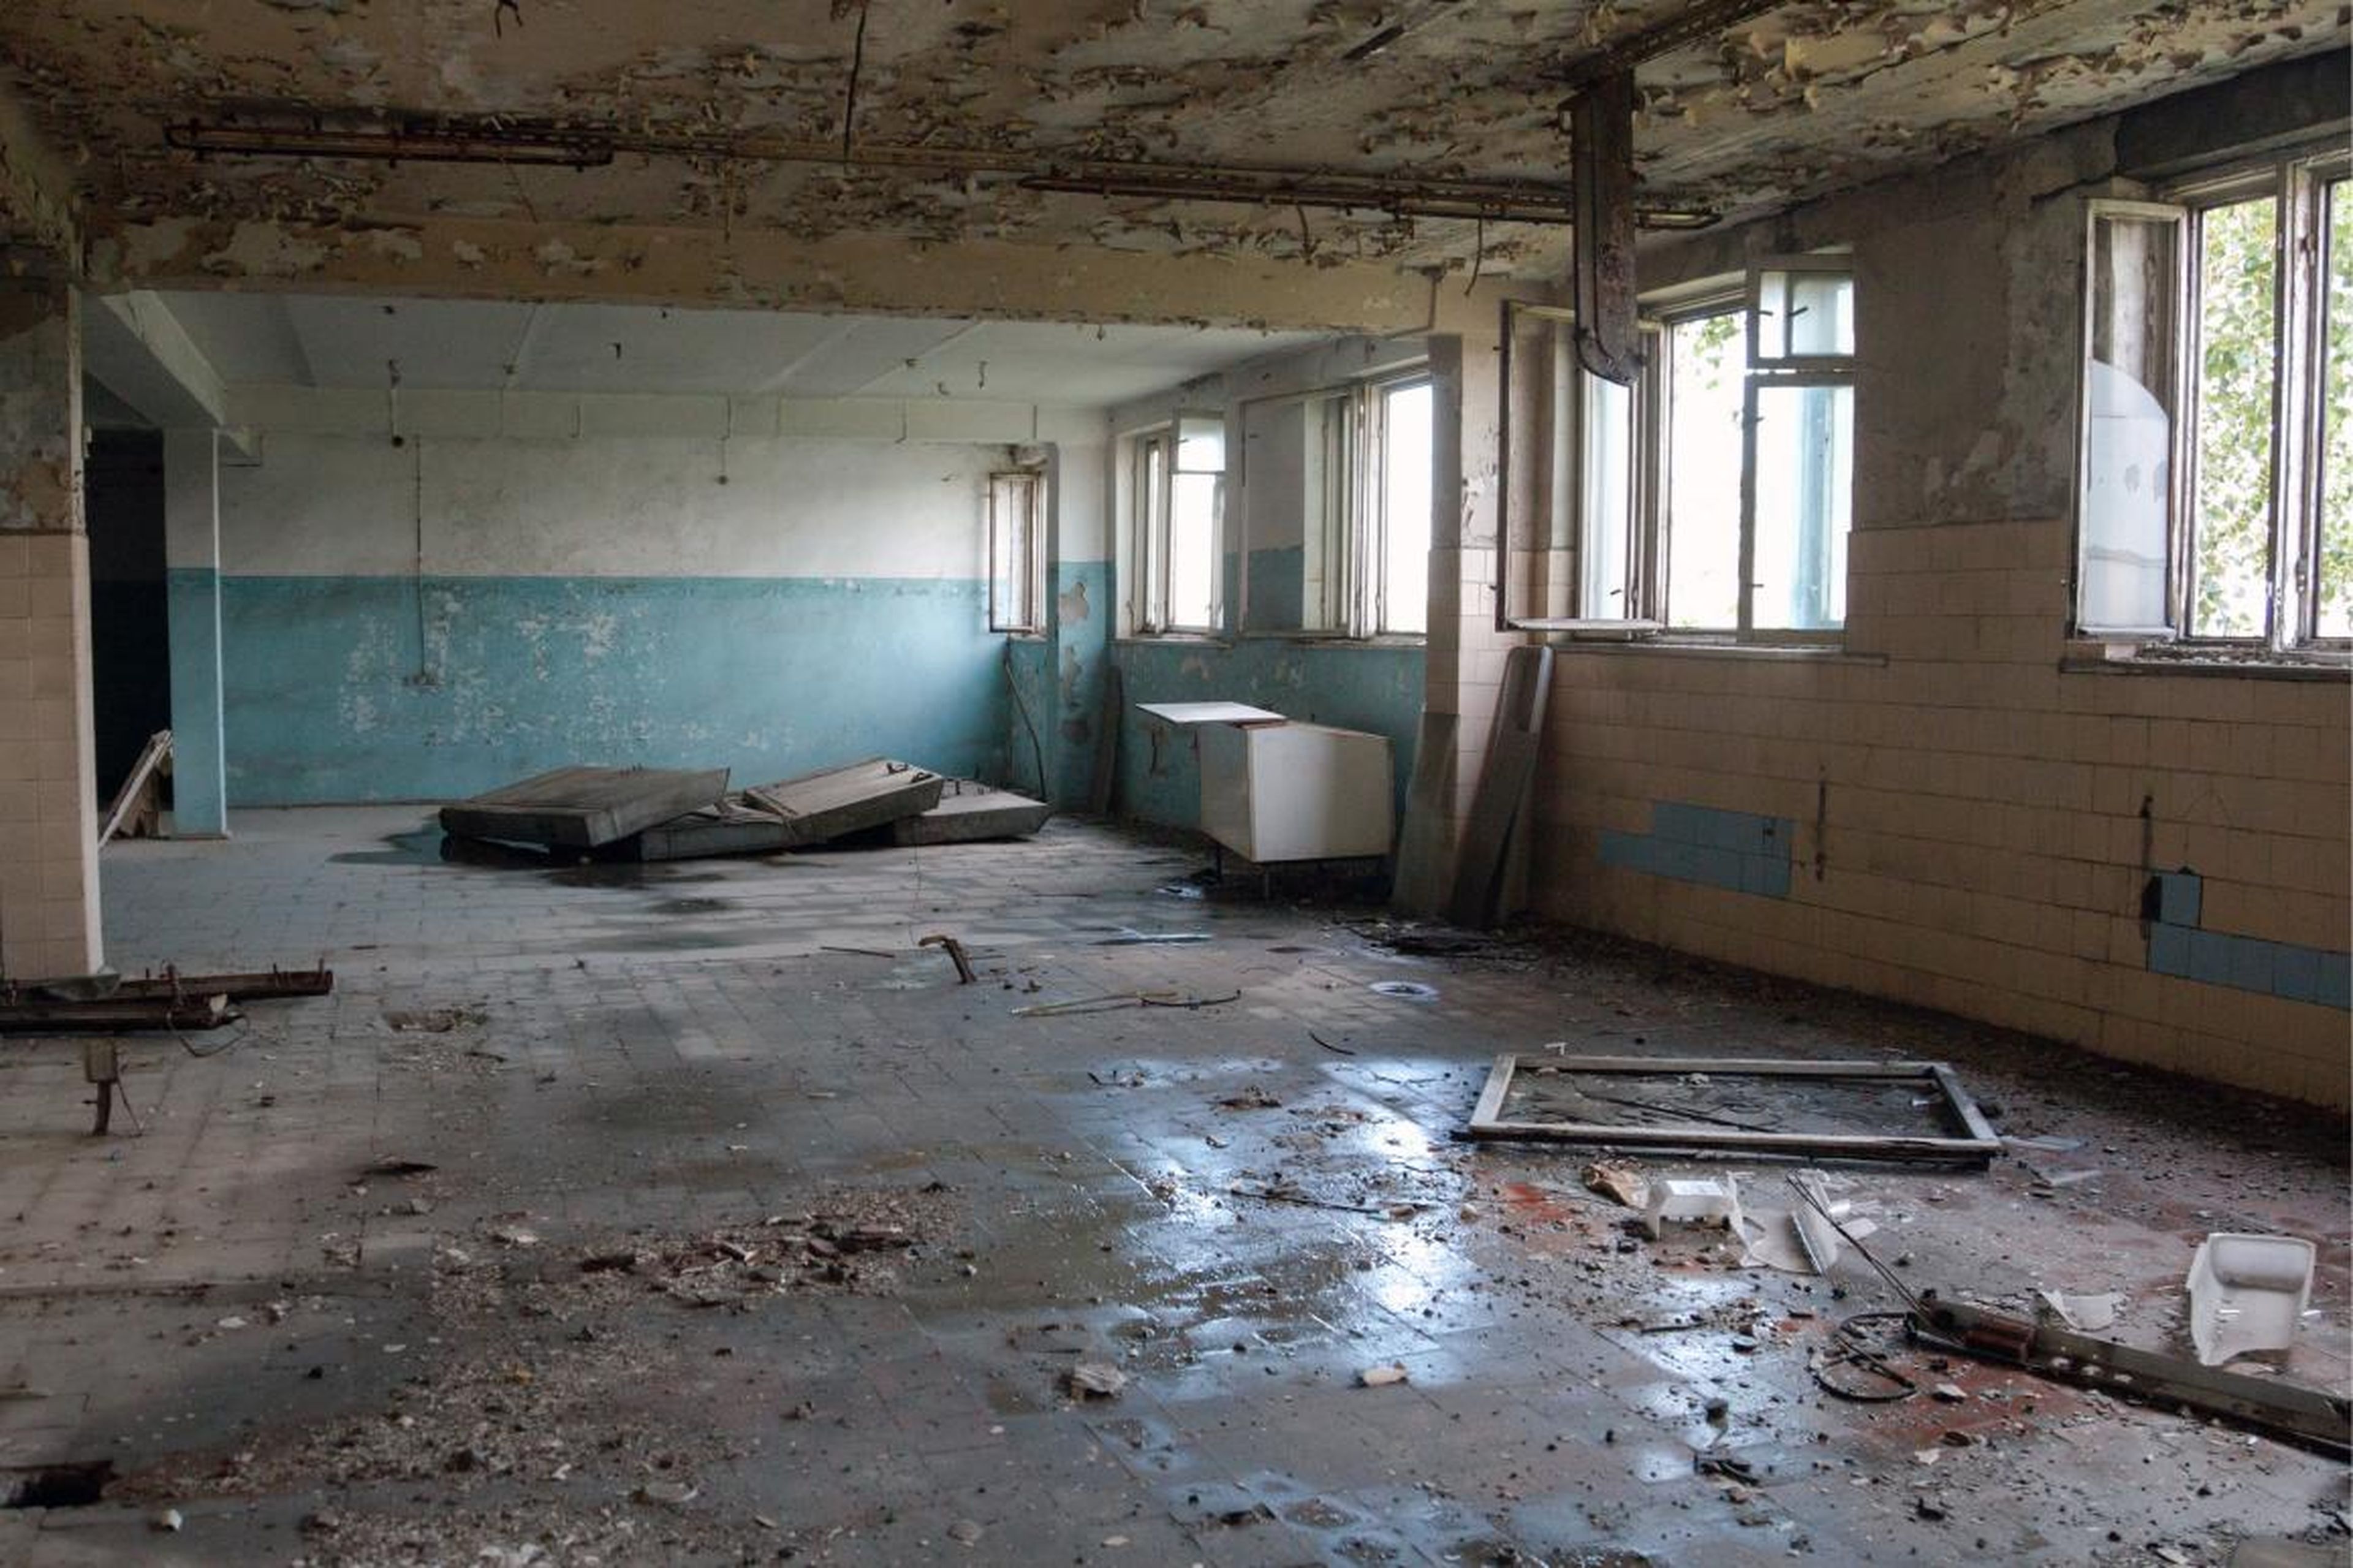 Escombros en el suelo de un edificio abandonado dentro de la planta de Usolyekhimprom.